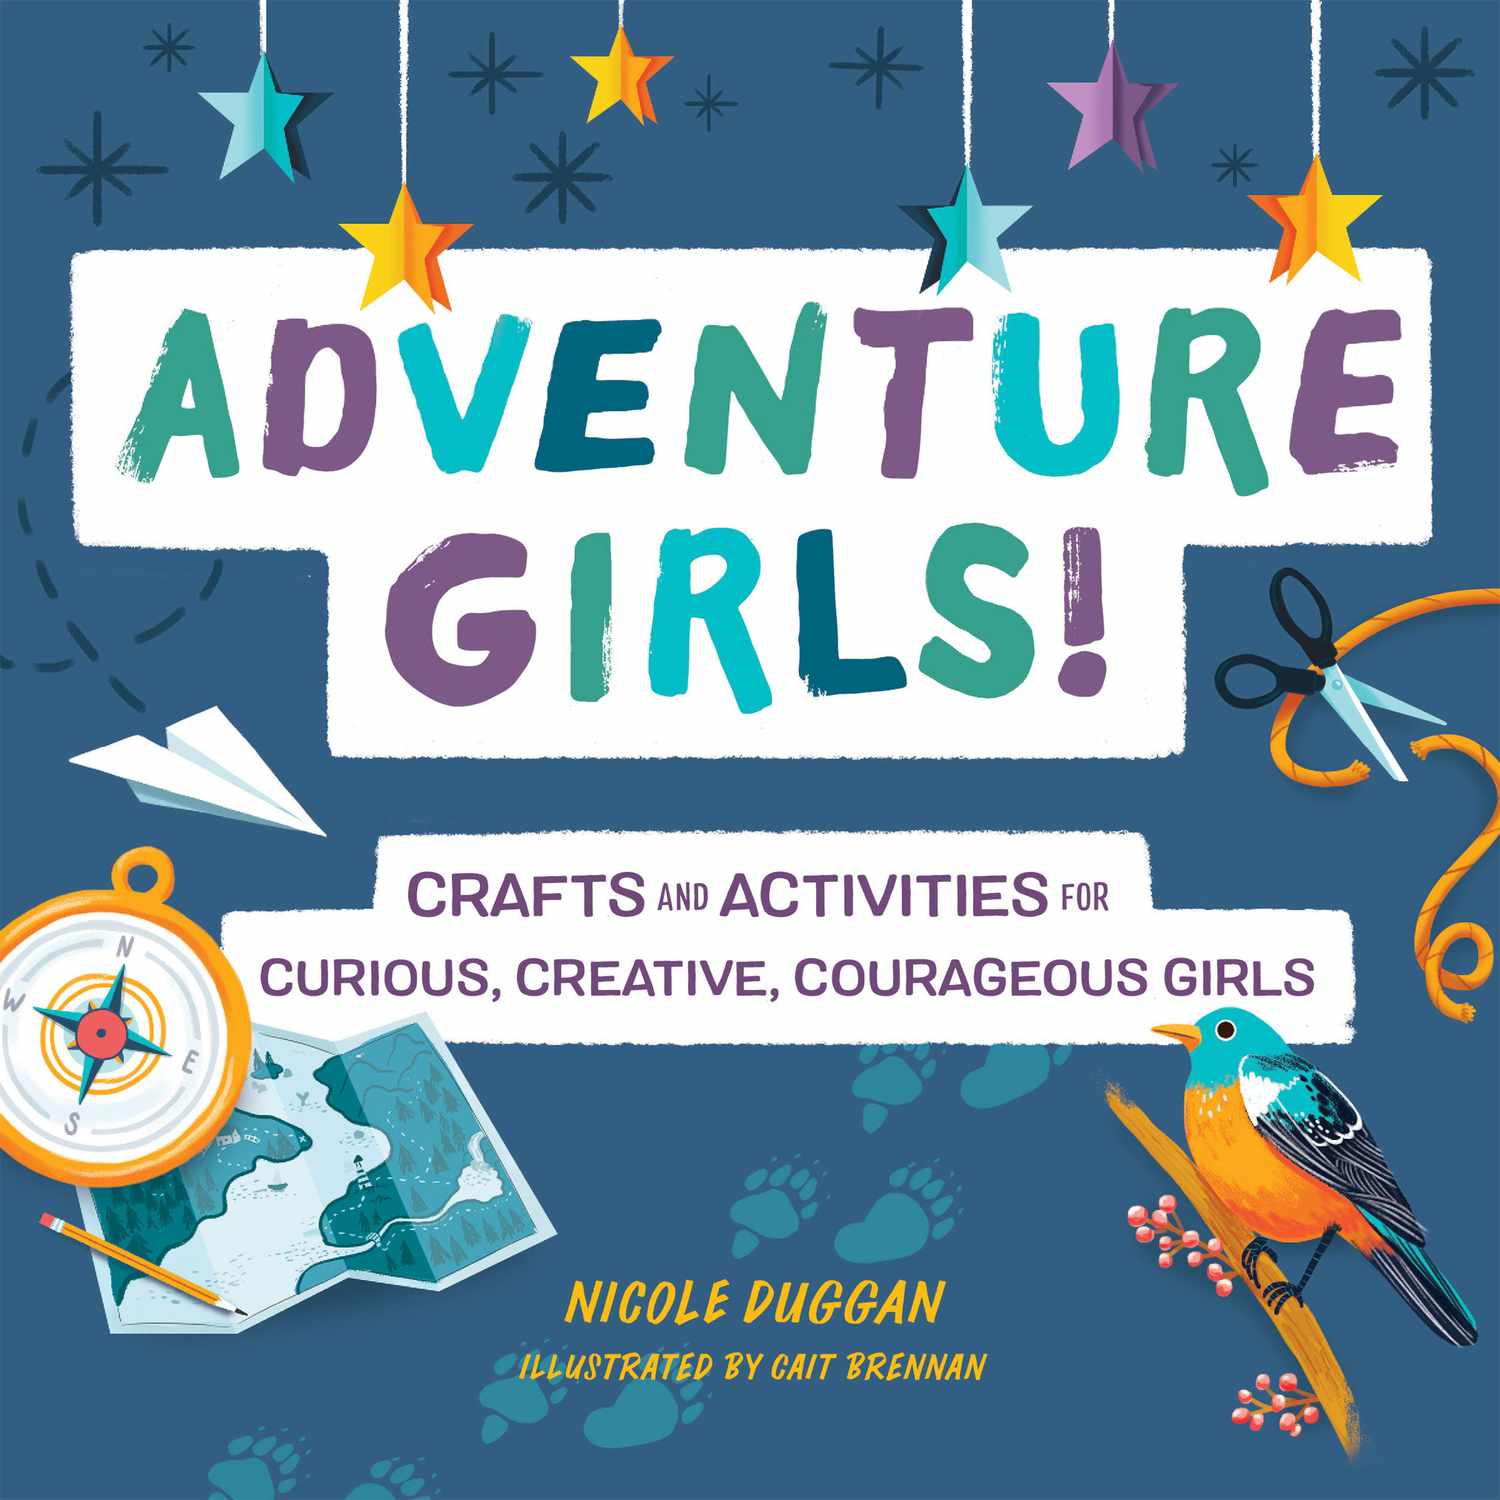 妮可·达根:冒险女孩!:为好奇、有创意、勇敢的女孩准备的工艺品和活动